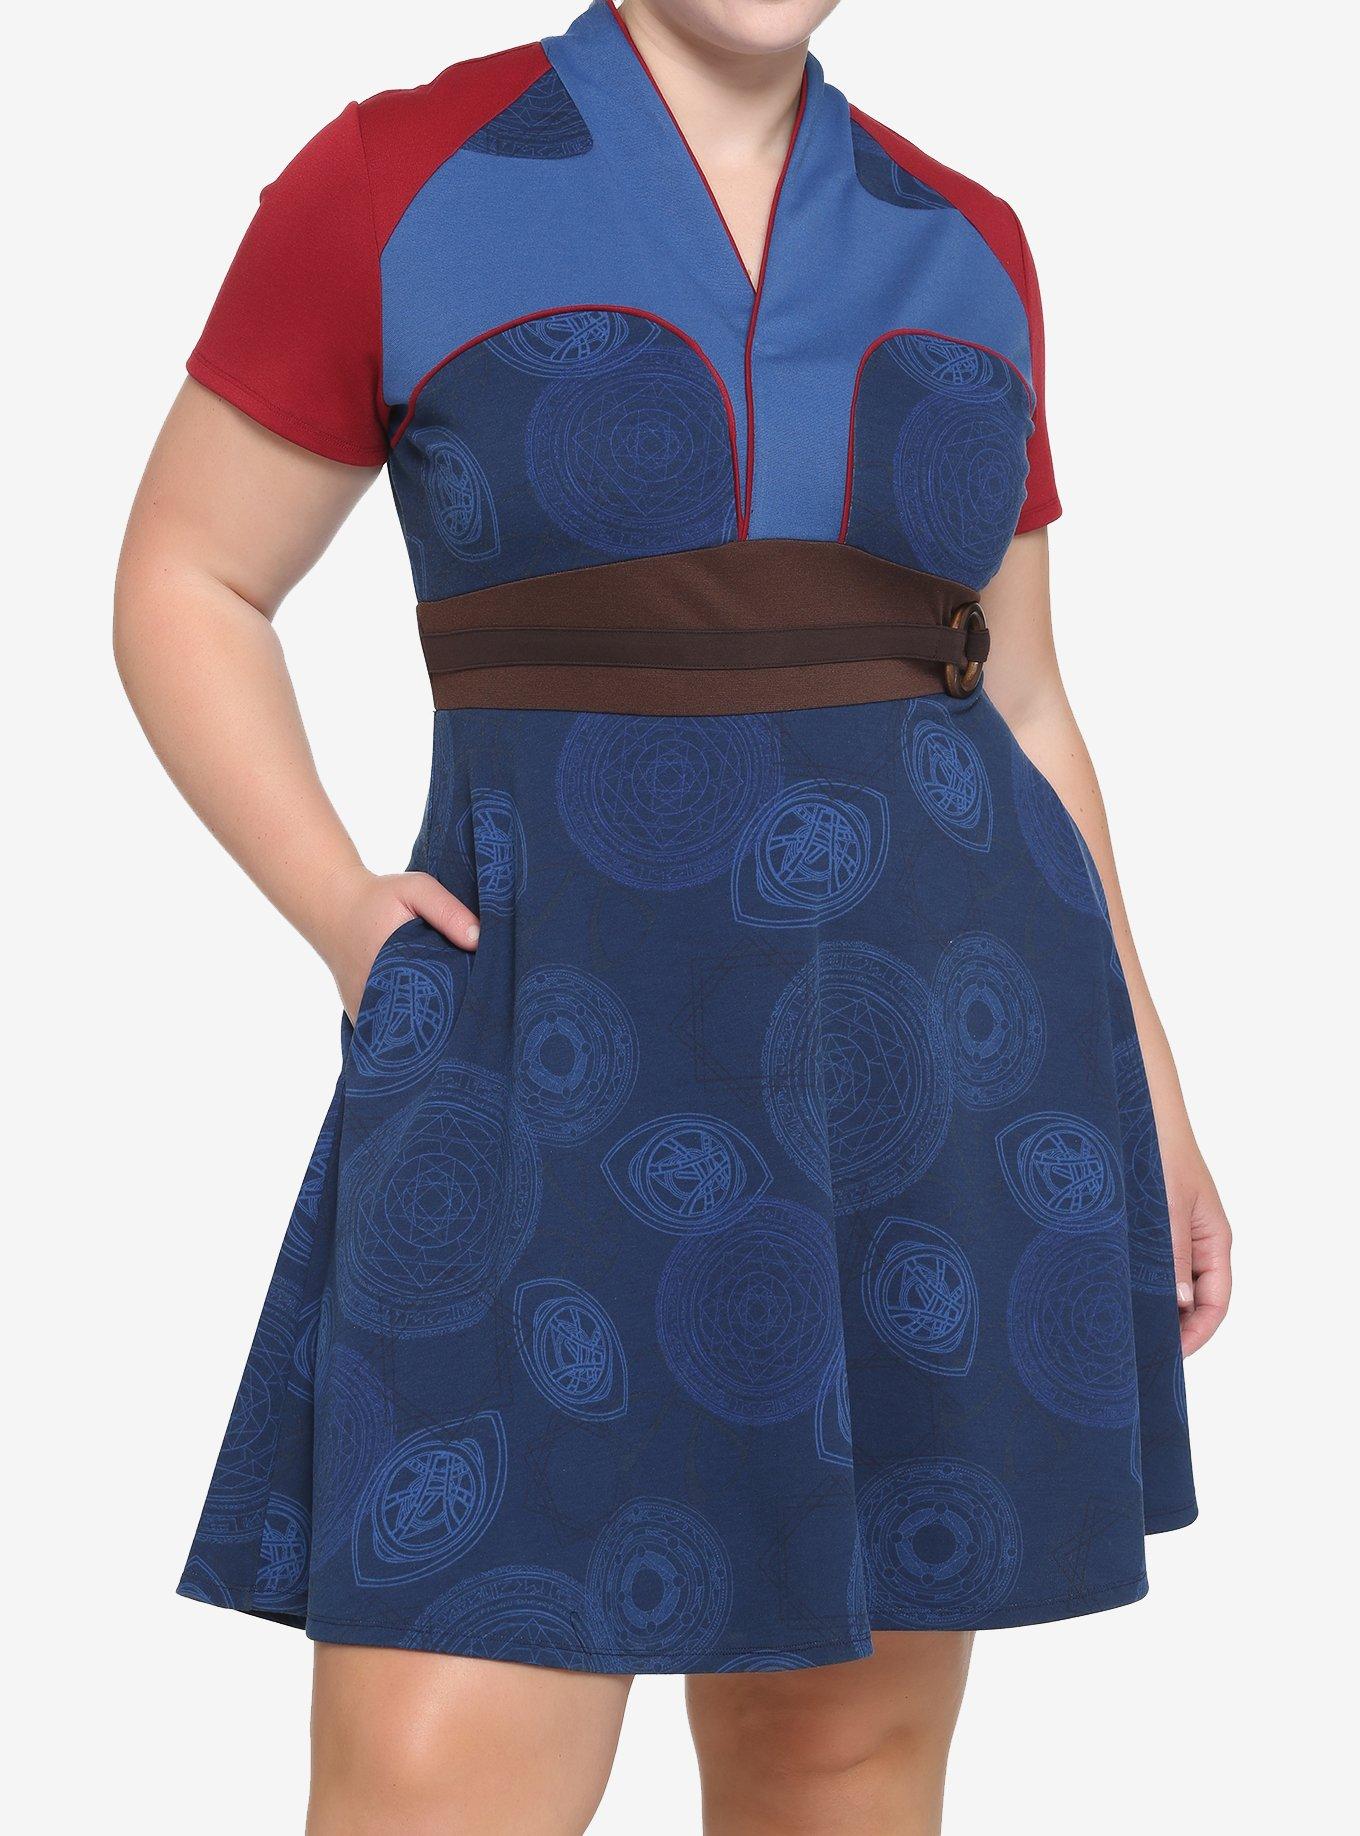 Dapper Day Outfit Ideas | Vintage Disney Dresses Her Universe Marvel Doctor Strange In The Multiverse Of Madness Doctor Strange Cosplay Dress Plus Size $43.92 AT vintagedancer.com